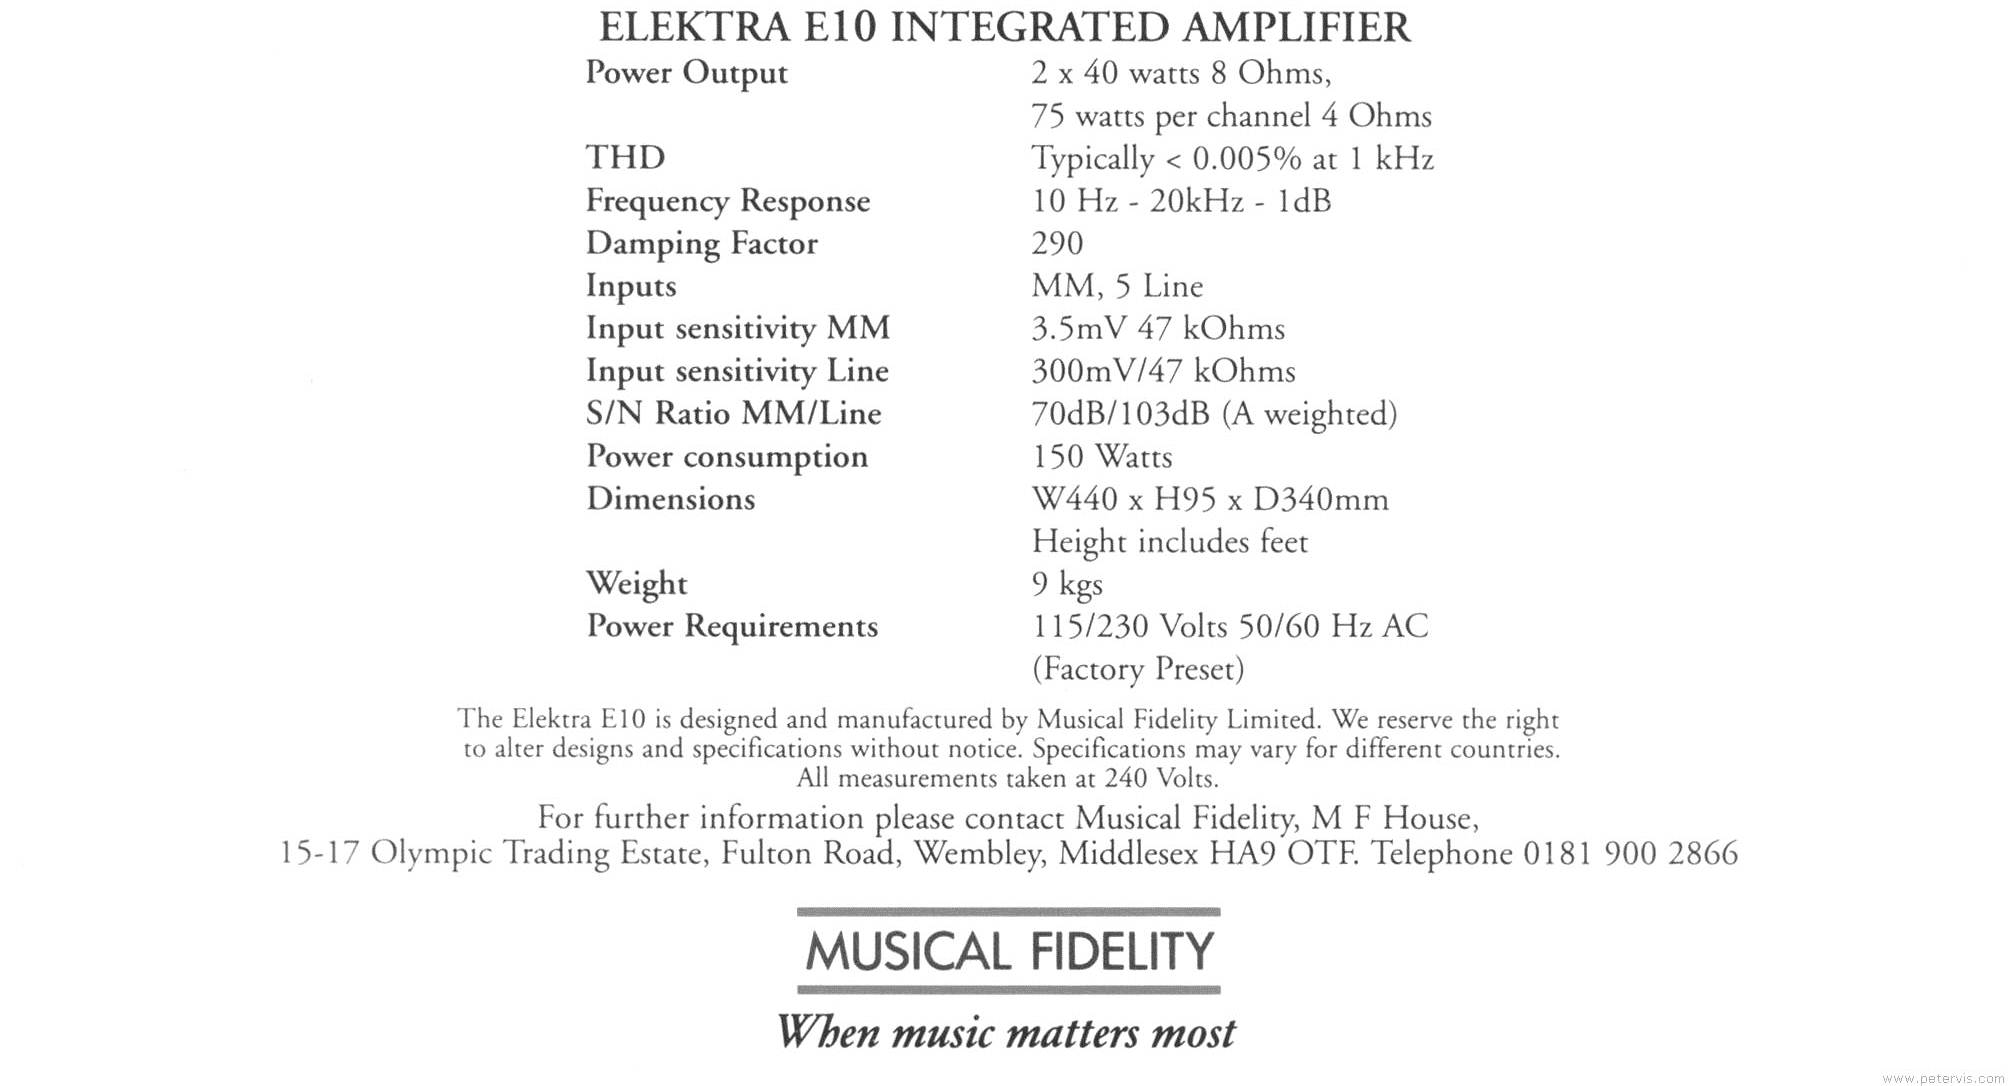 Musical Fidelity Elektra E10